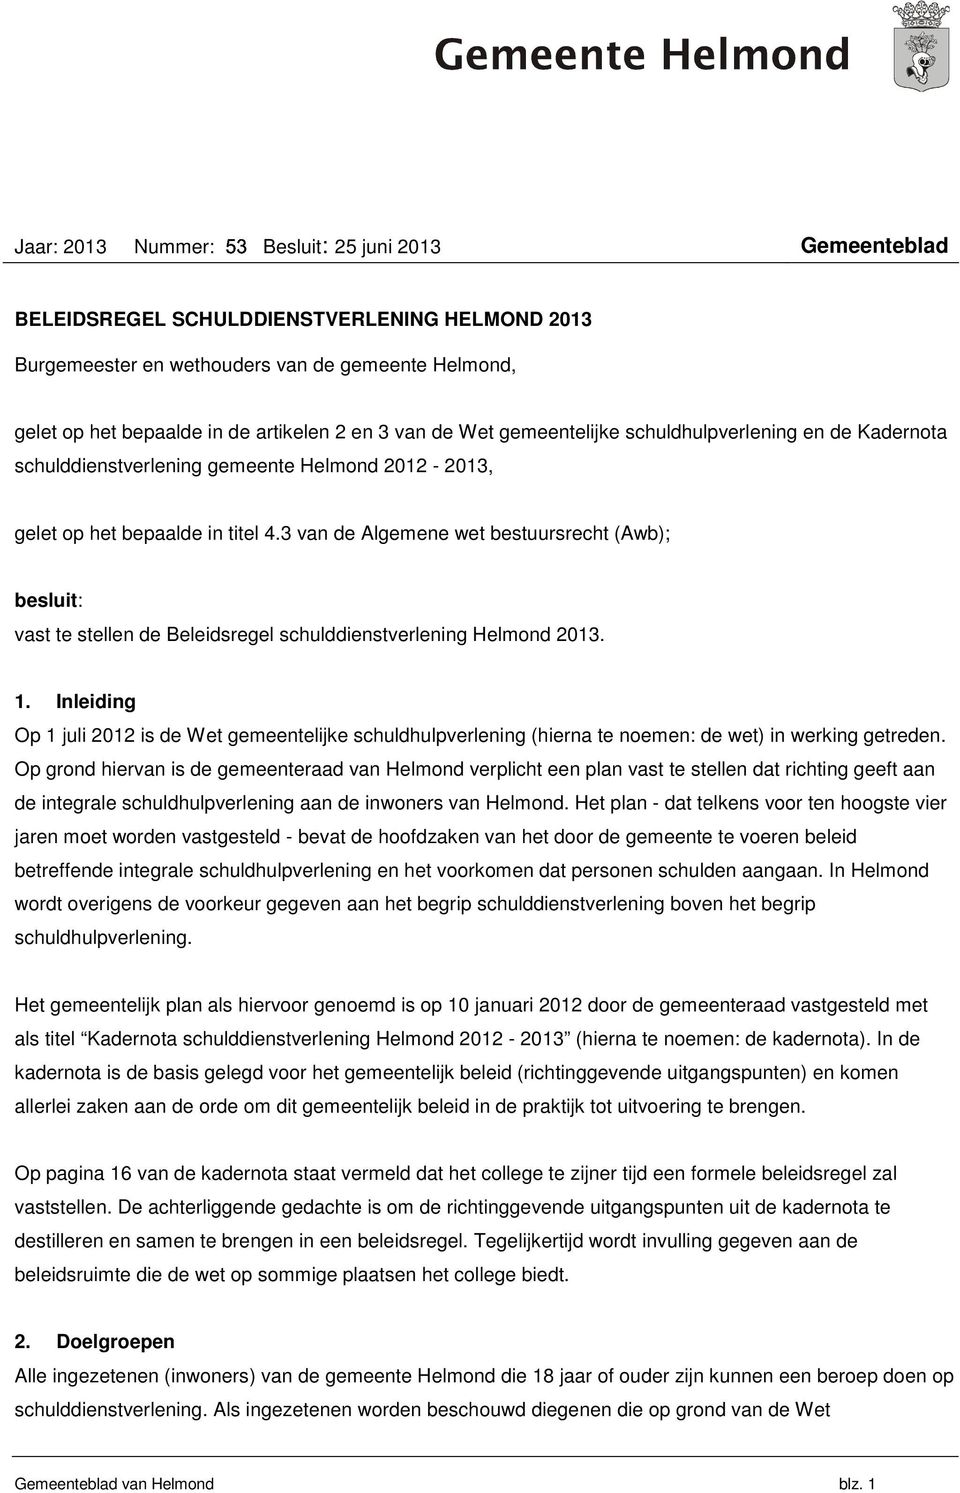 3 van de Algemene wet bestuursrecht (Awb); besluit: vast te stellen de Beleidsregel schulddienstverlening Helmond 2013. 1.